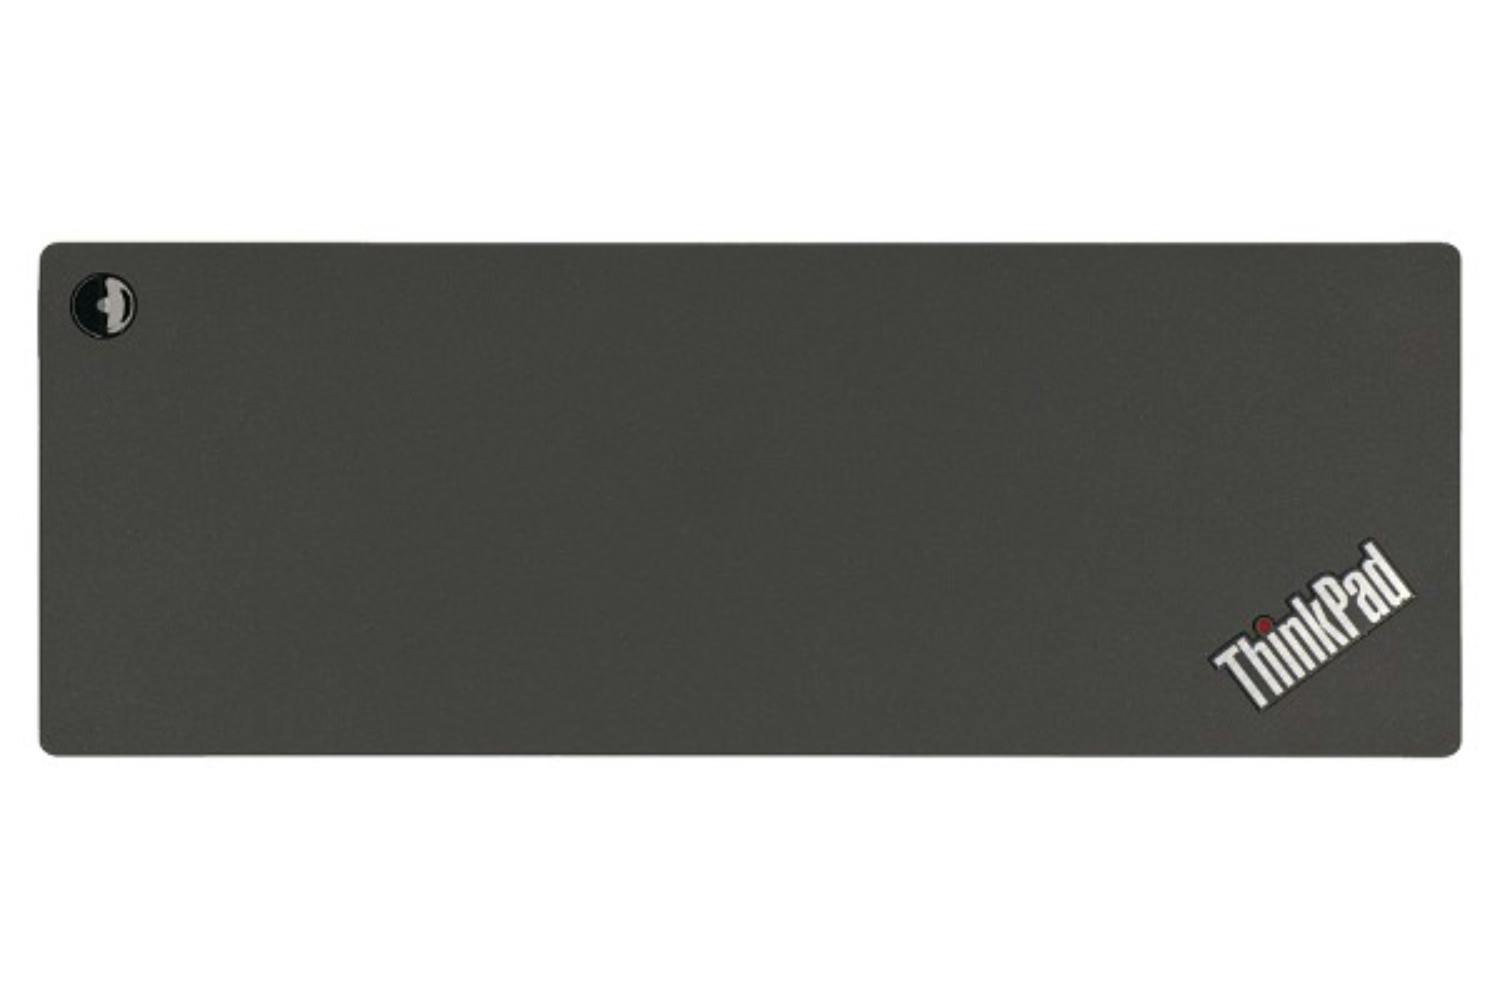 Lenovo 40AN0135UK 135W ThinkPad Thunderbolt 3 Dock